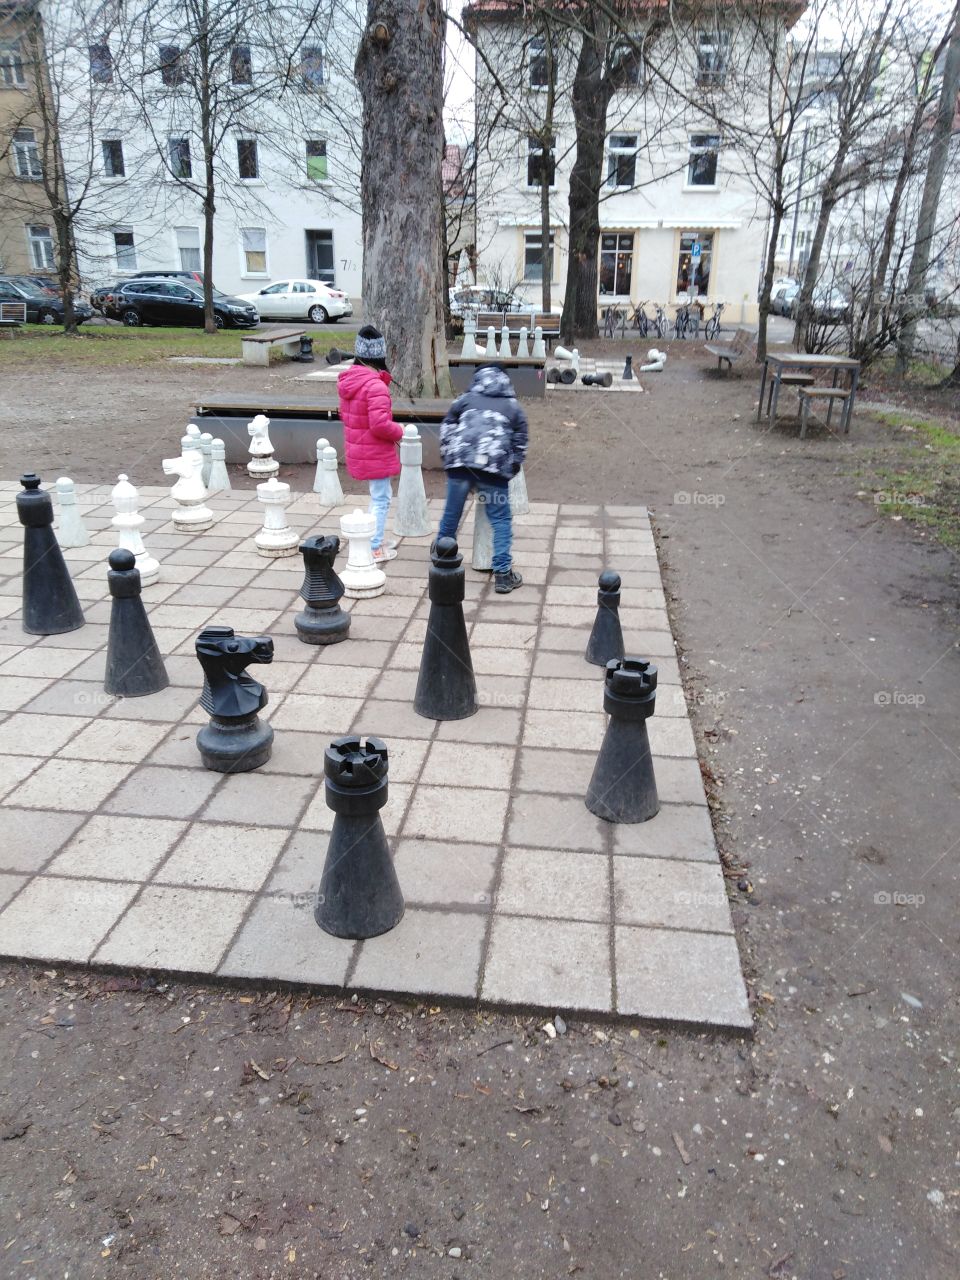 Kinder spielen Schach in einem Park in der Stadt... Ulm